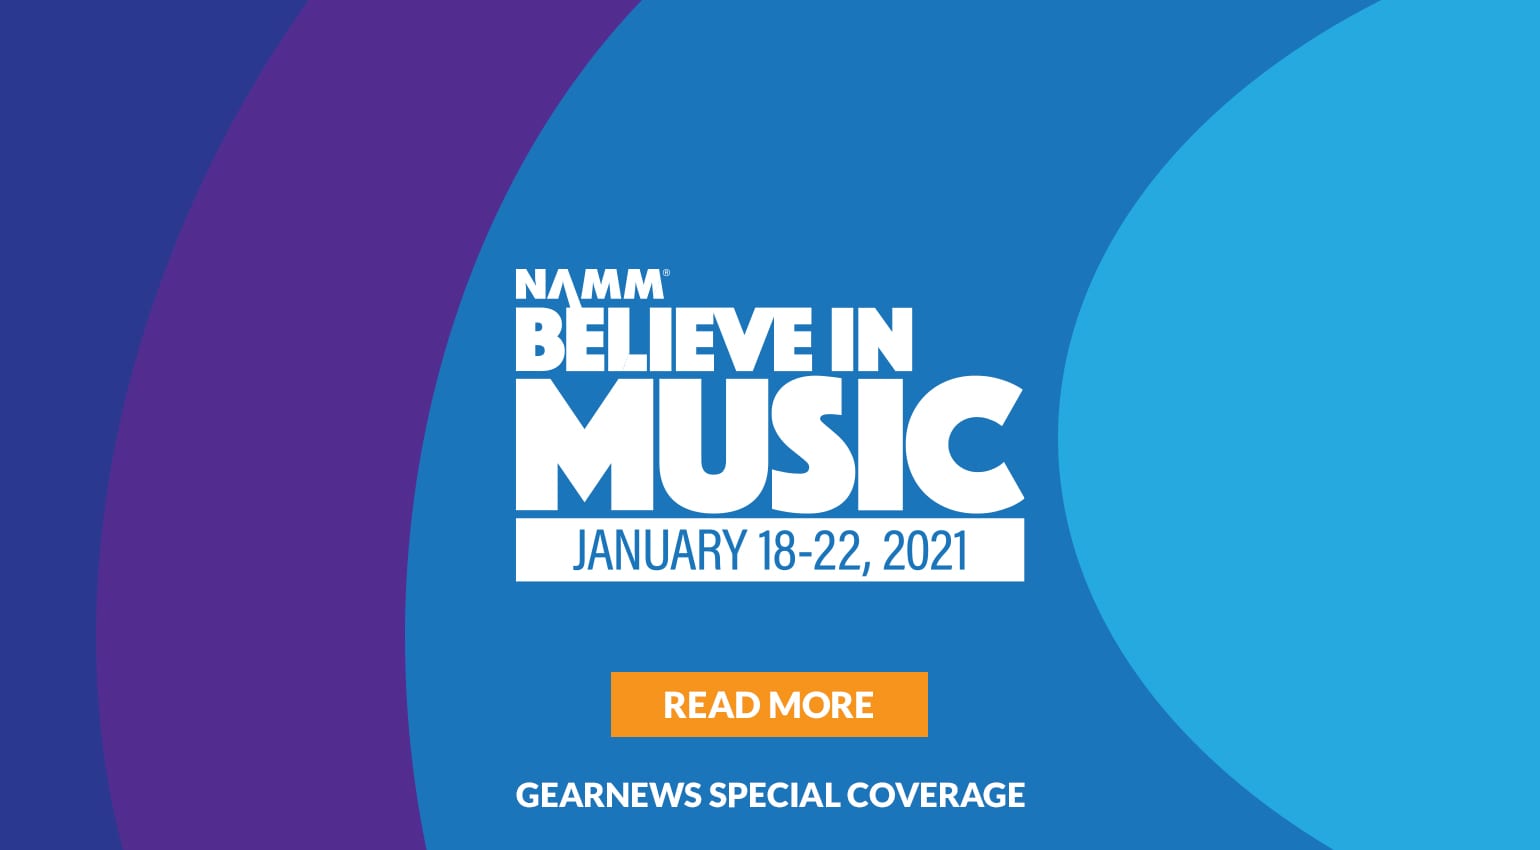 NAMM 2021 : Les nouvelles guitares, amplis, synthés, équipements de studio et équipements live/PA les plus en vogue !